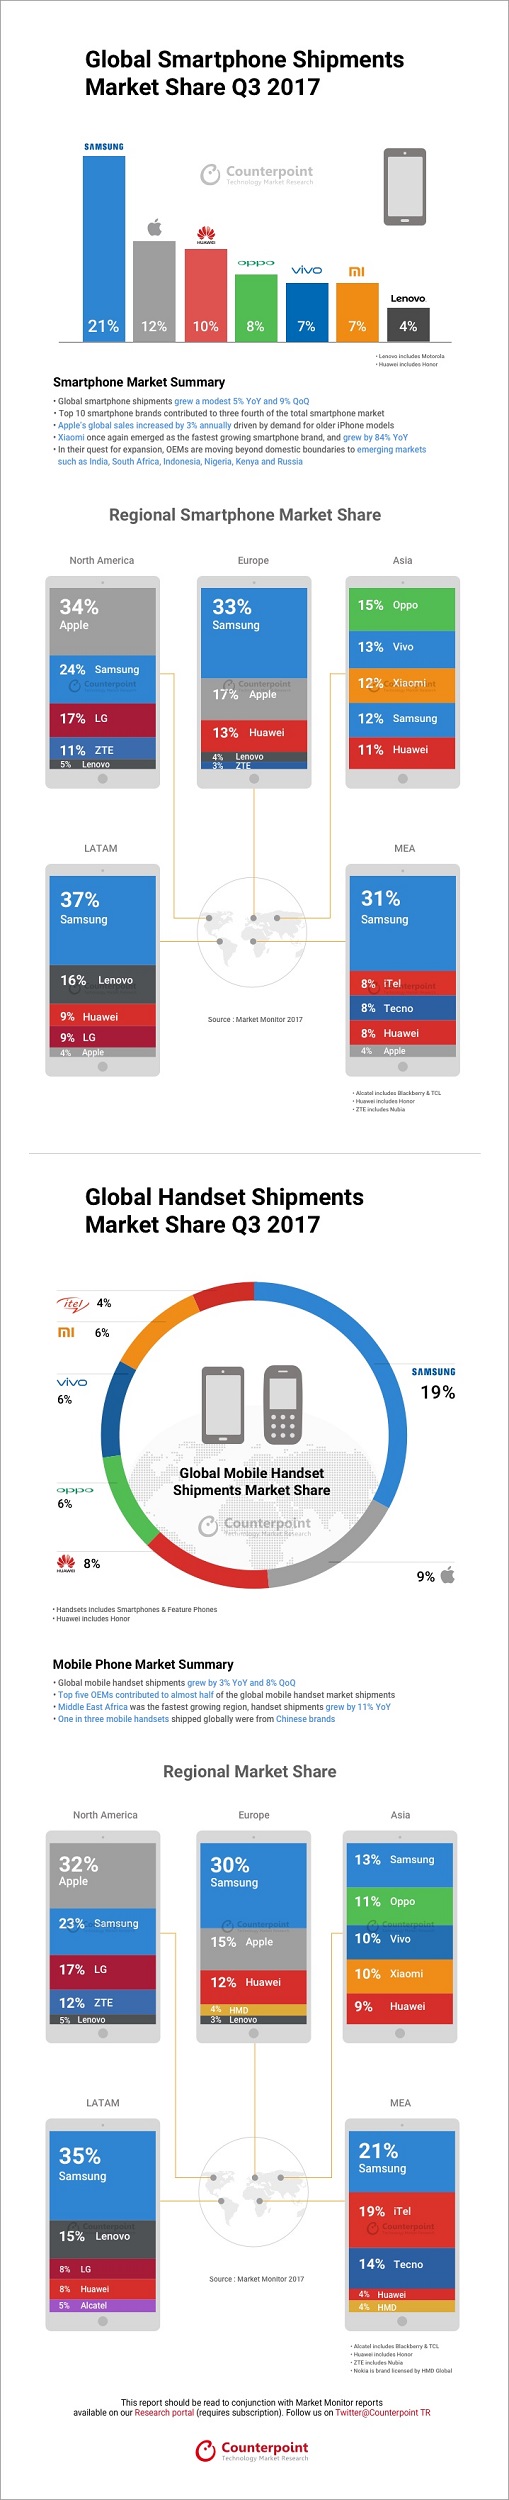 Infografía de Counterpoint Research sobre el estado del mercado de smartphones al cierre del tercer trimestre del 2017. 